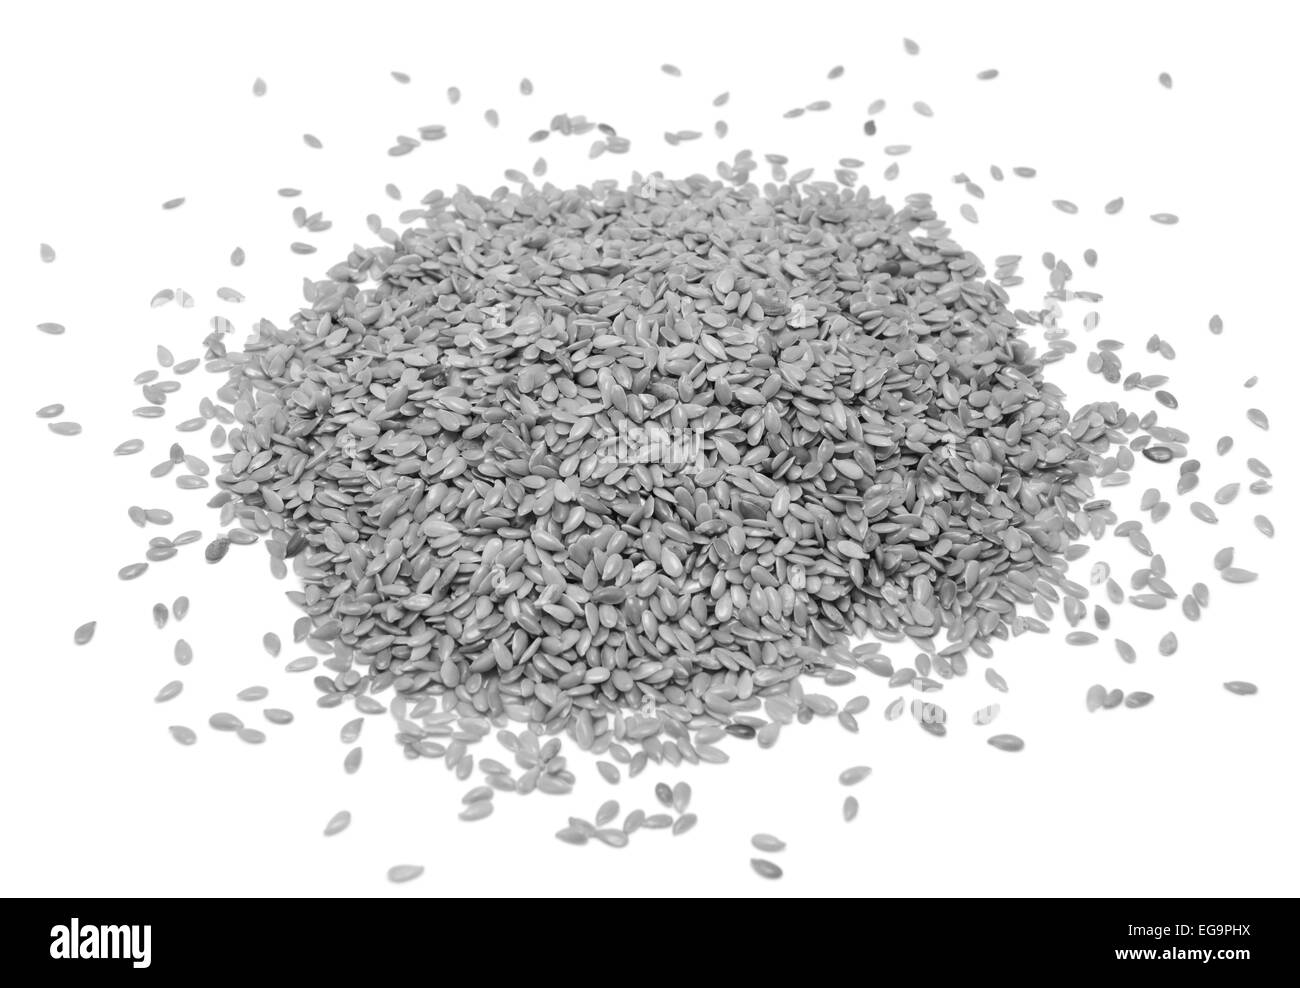 Les graines de lin ou lin, isolé sur fond blanc - traitement monochrome Banque D'Images